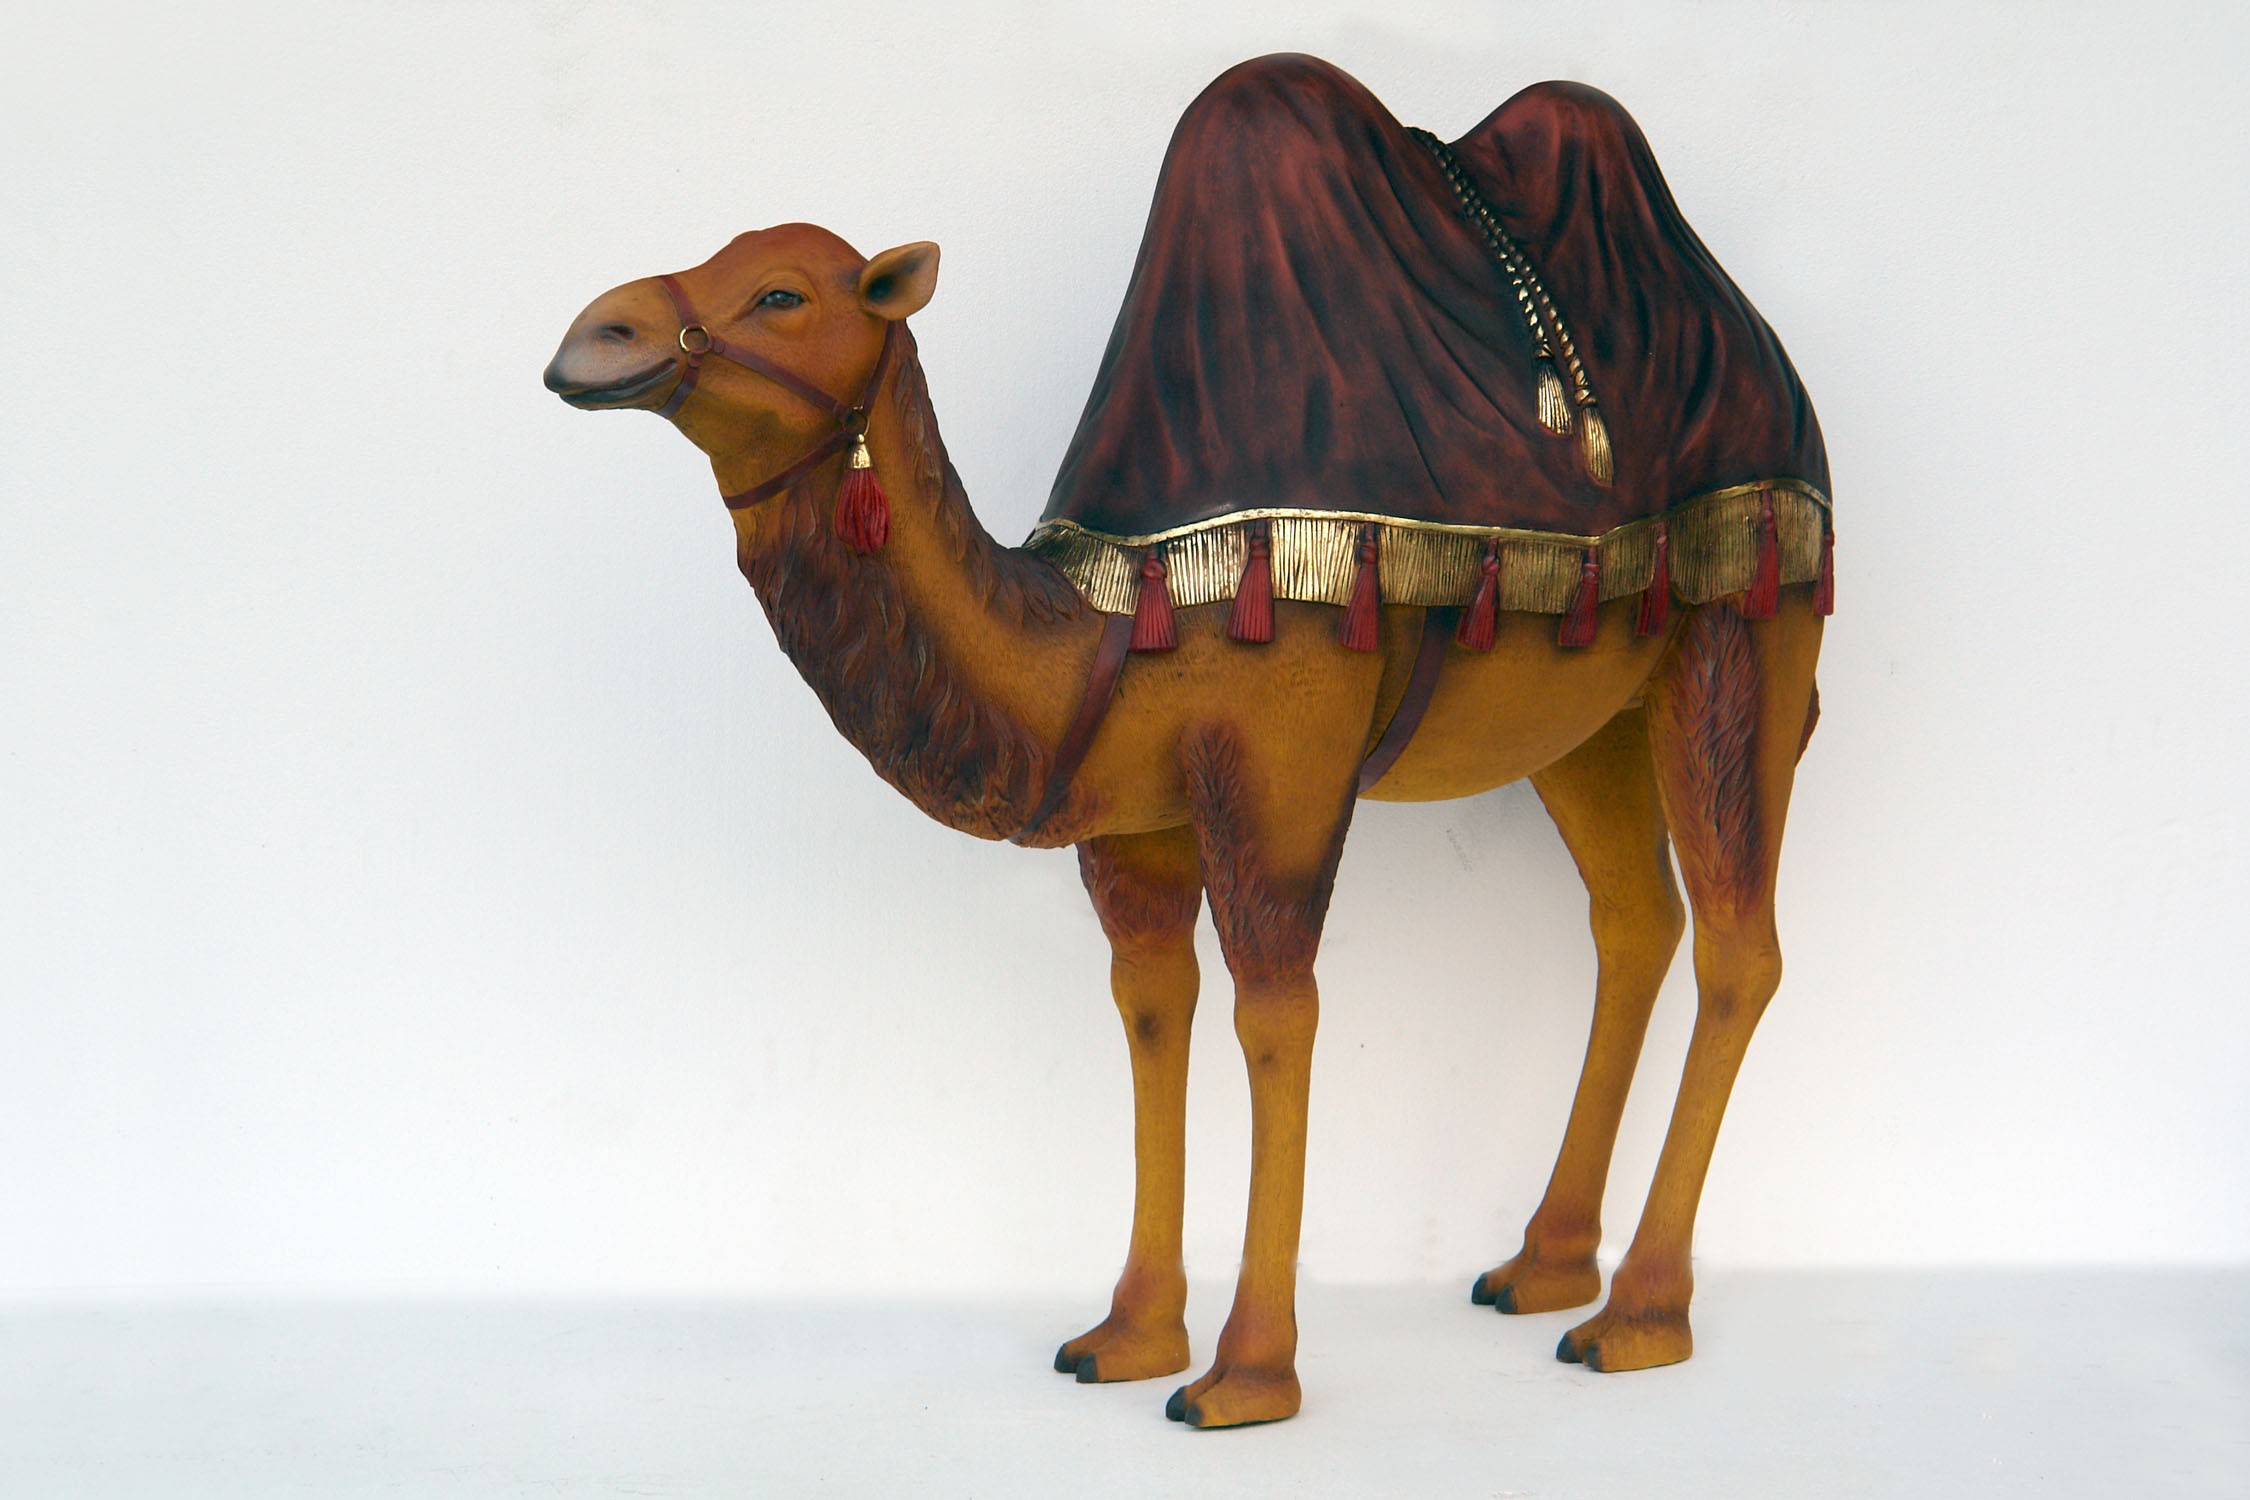 orientalisches Kamel mit dunkelrotem Tuch